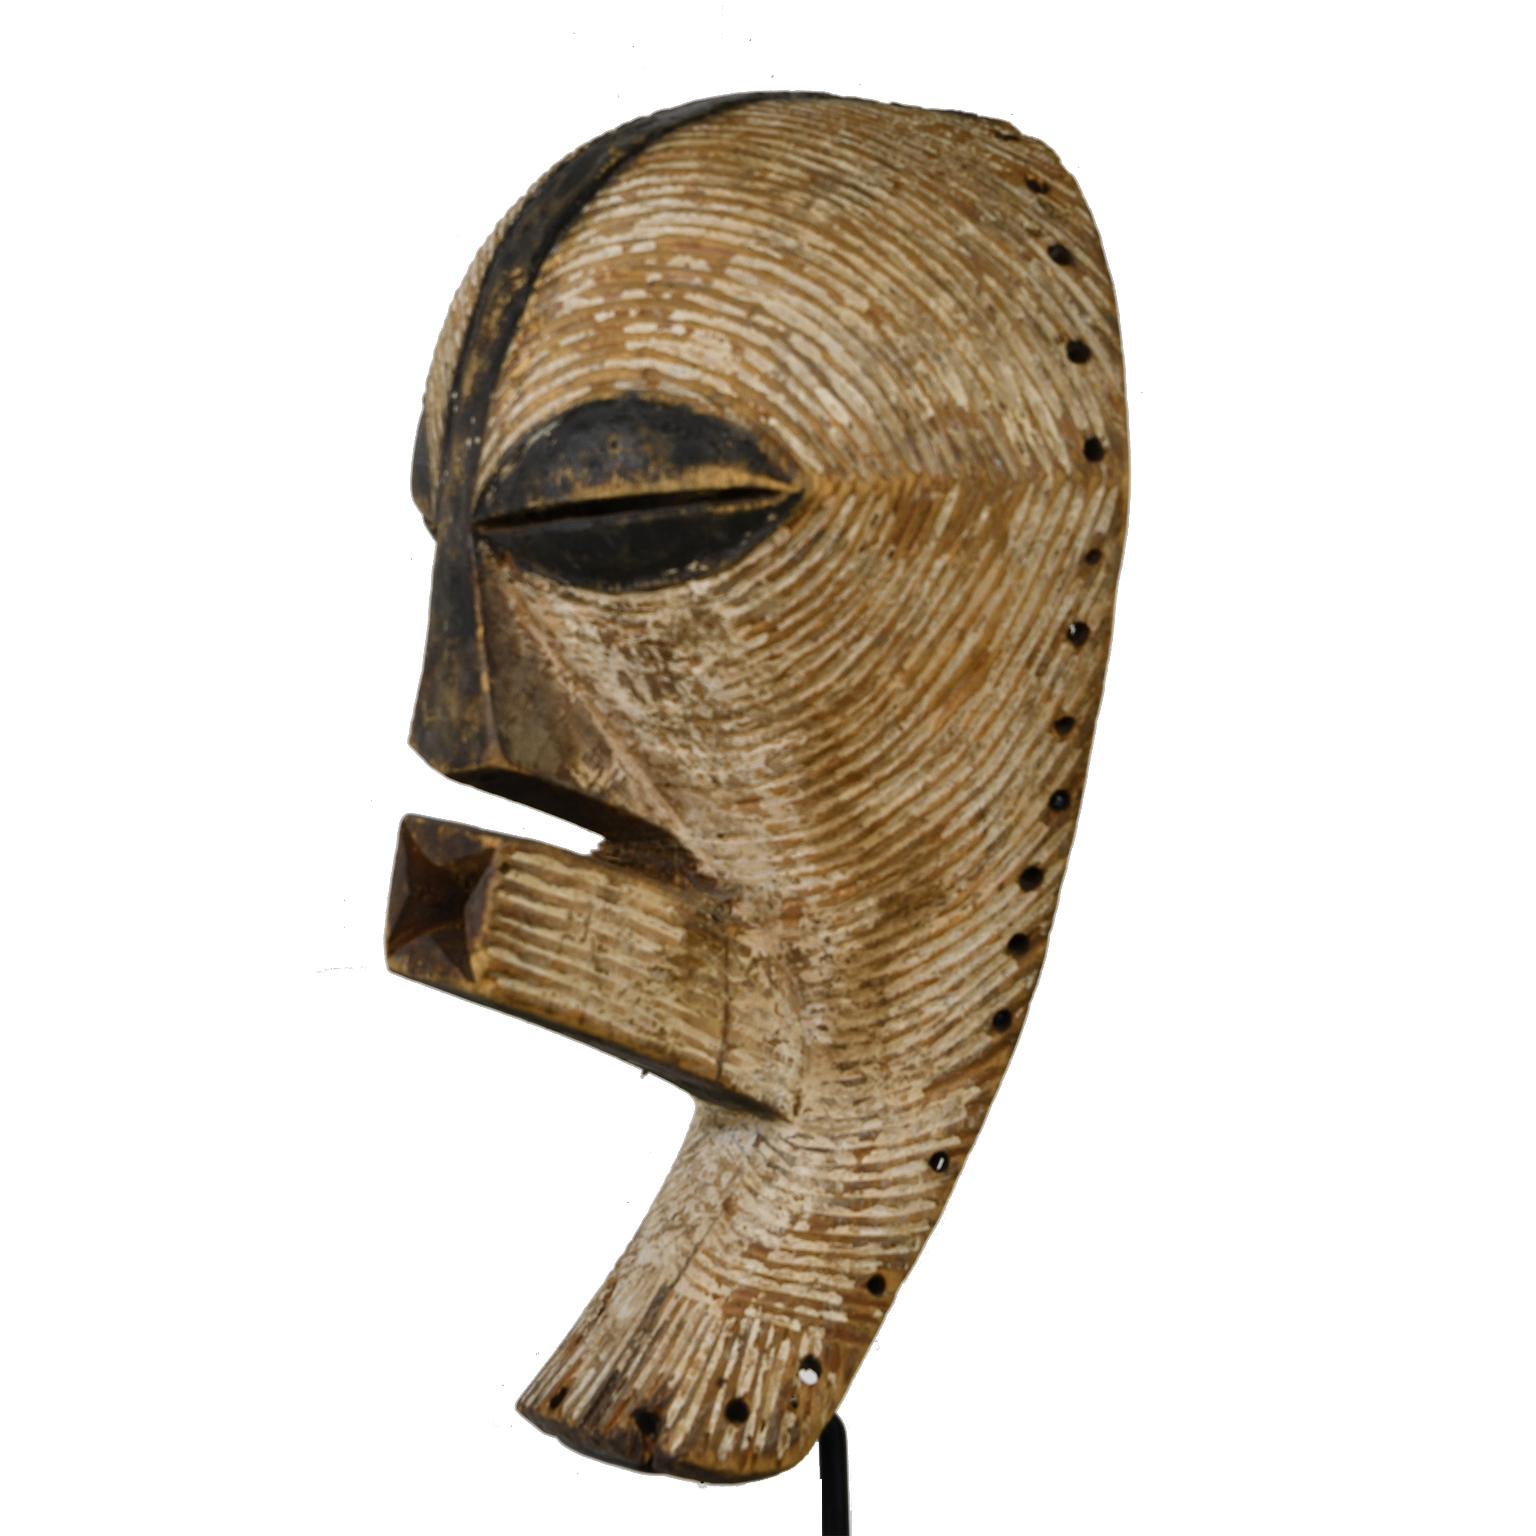 kifwebe mask for sale